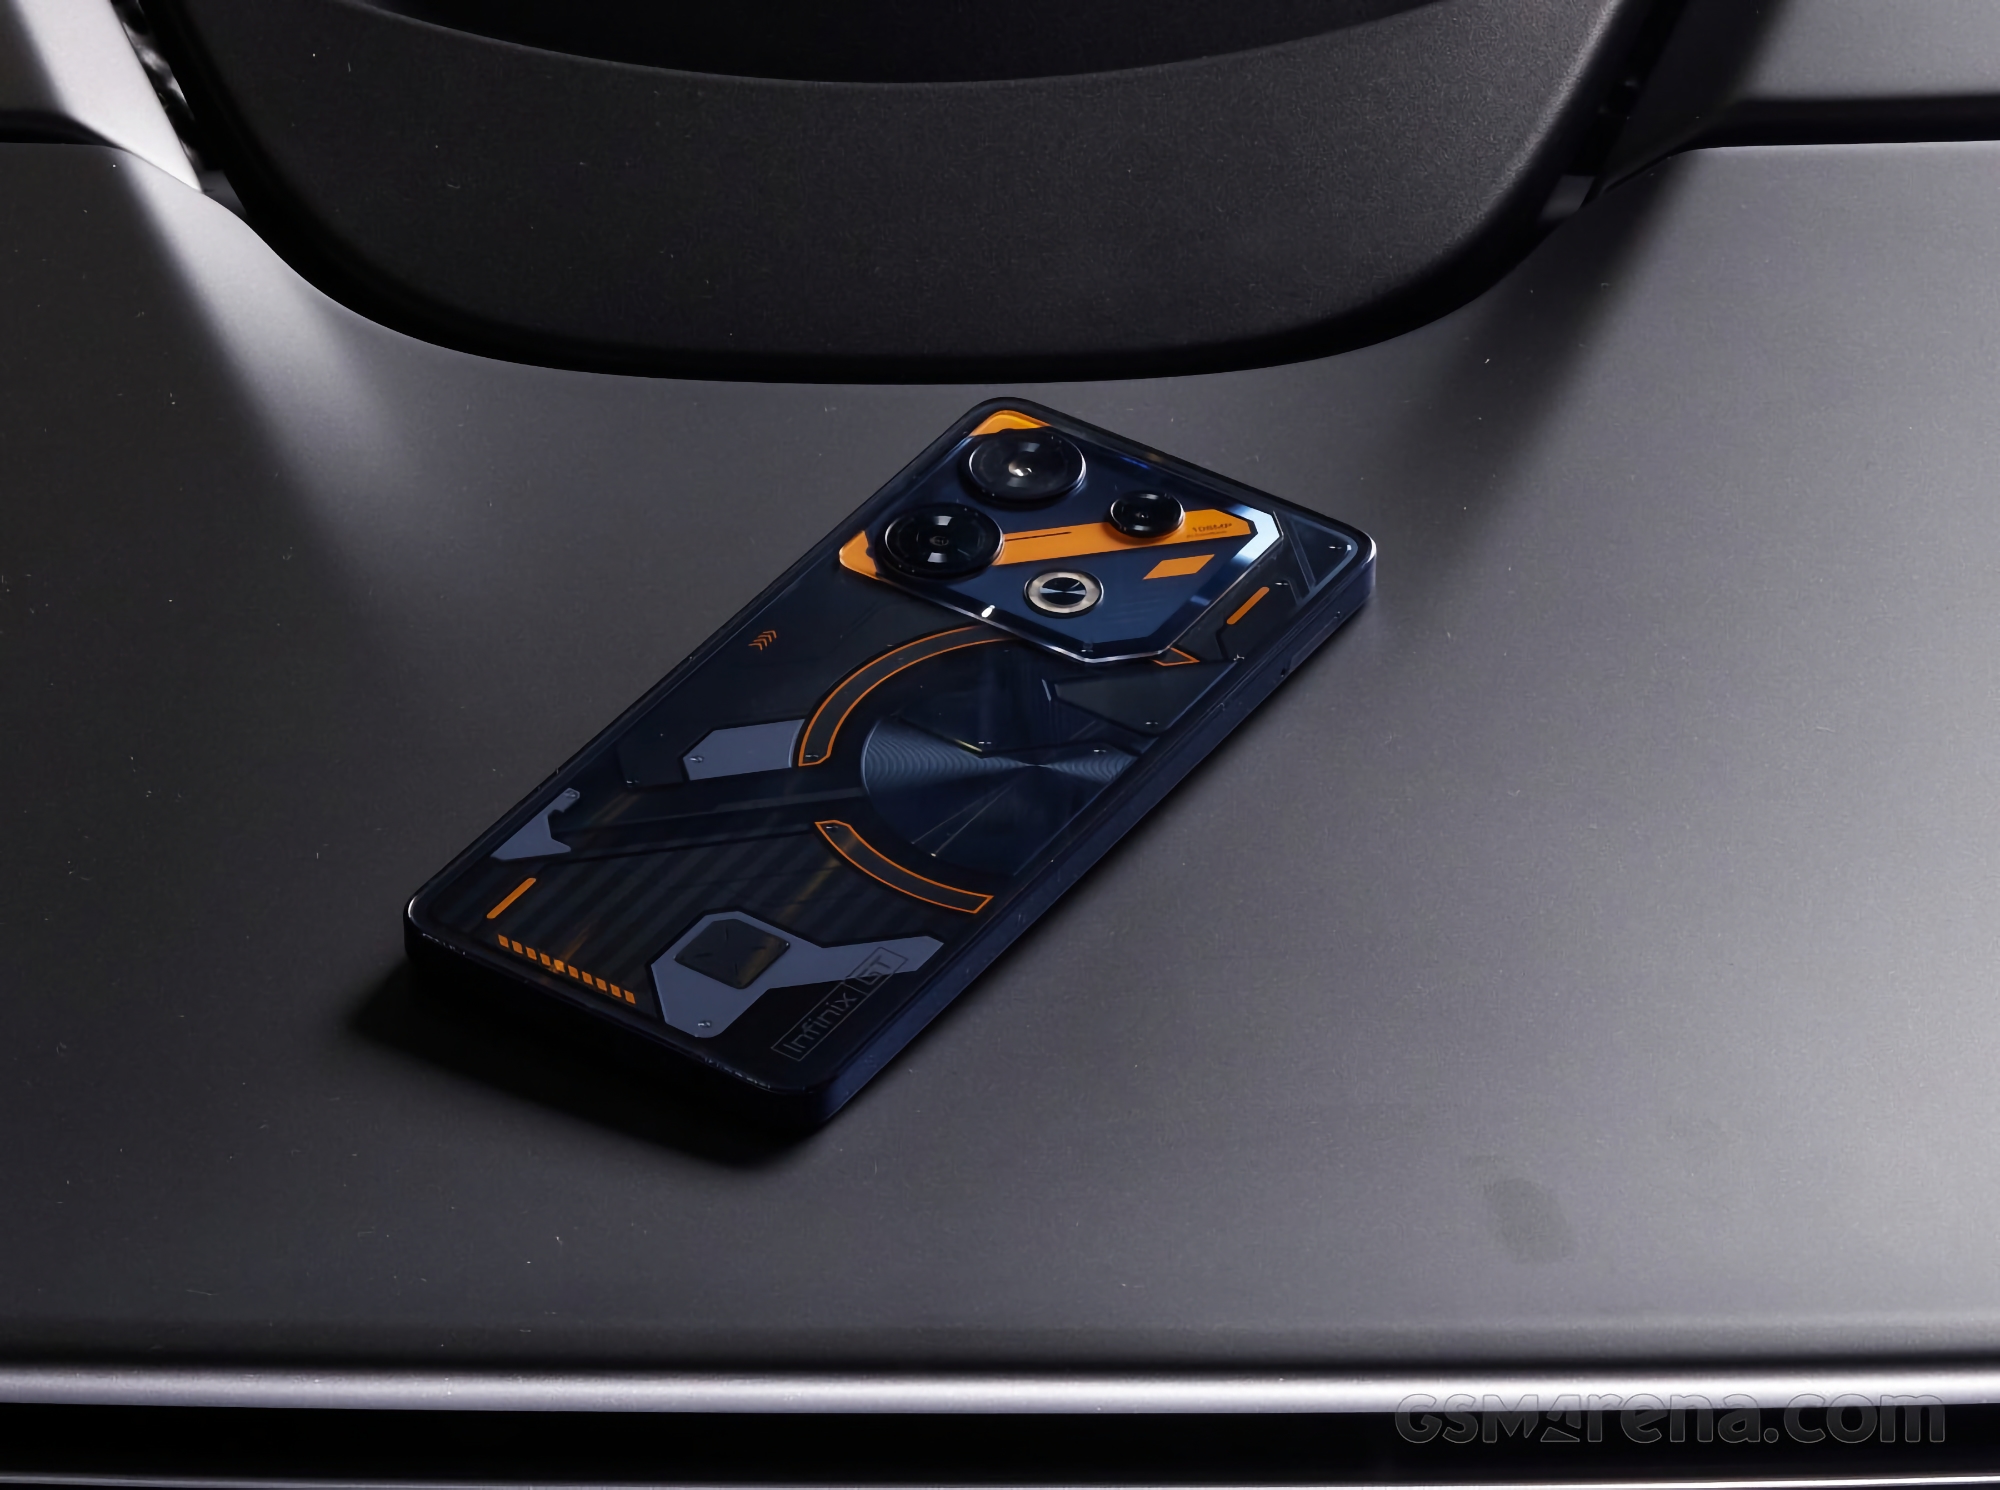 Ecco come sarà l'Infinix GT 10 Pro: uno smartphone da gioco con un design simile al Nothing Phone 2